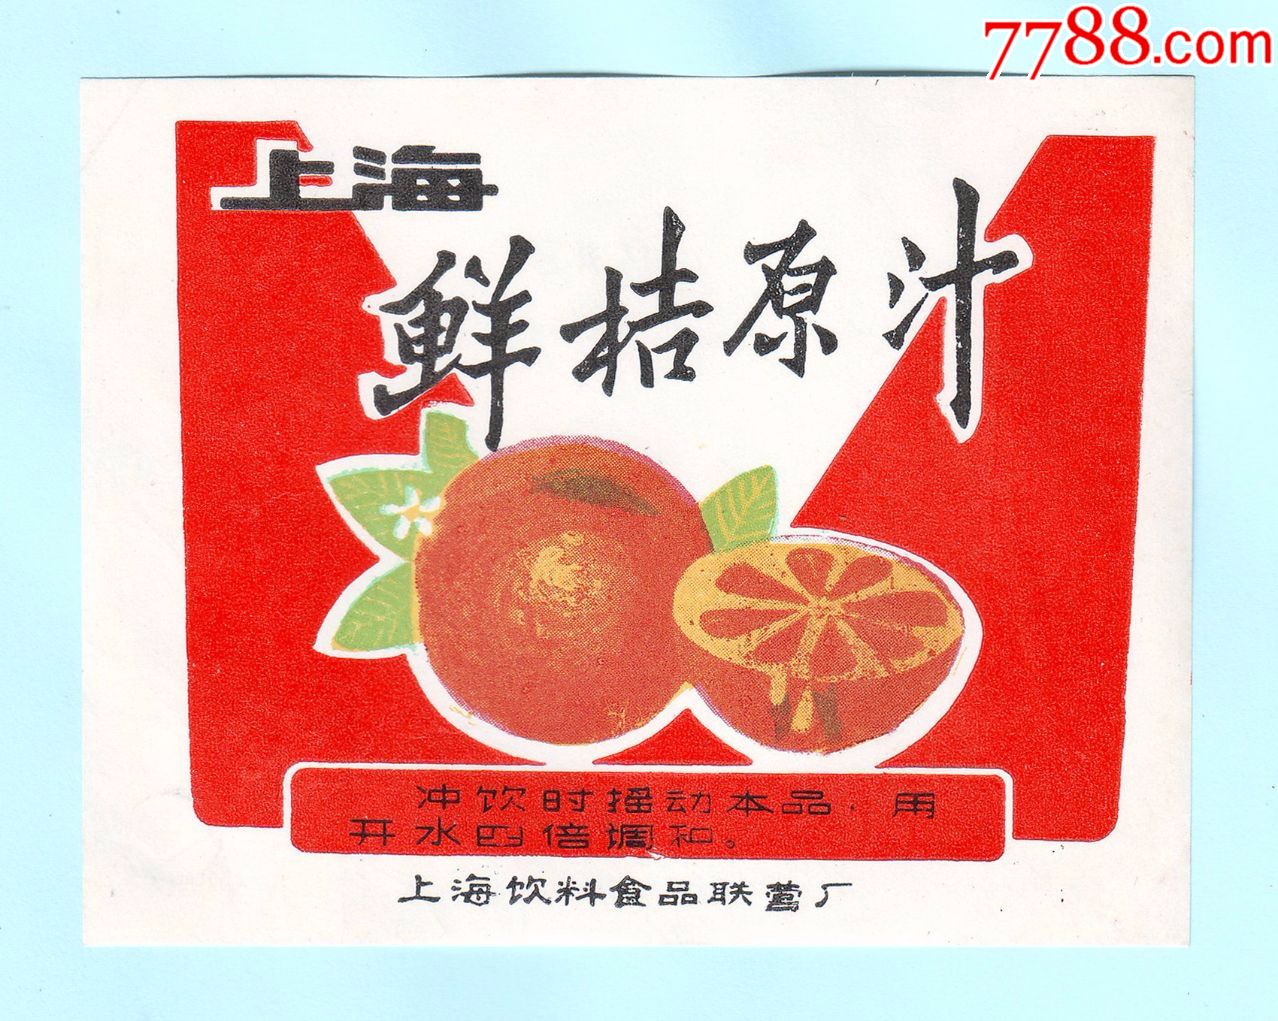 上海饮料食品联营厂"上海鲜桔原汁"商标,背面白净,长11.3厘米,宽8.